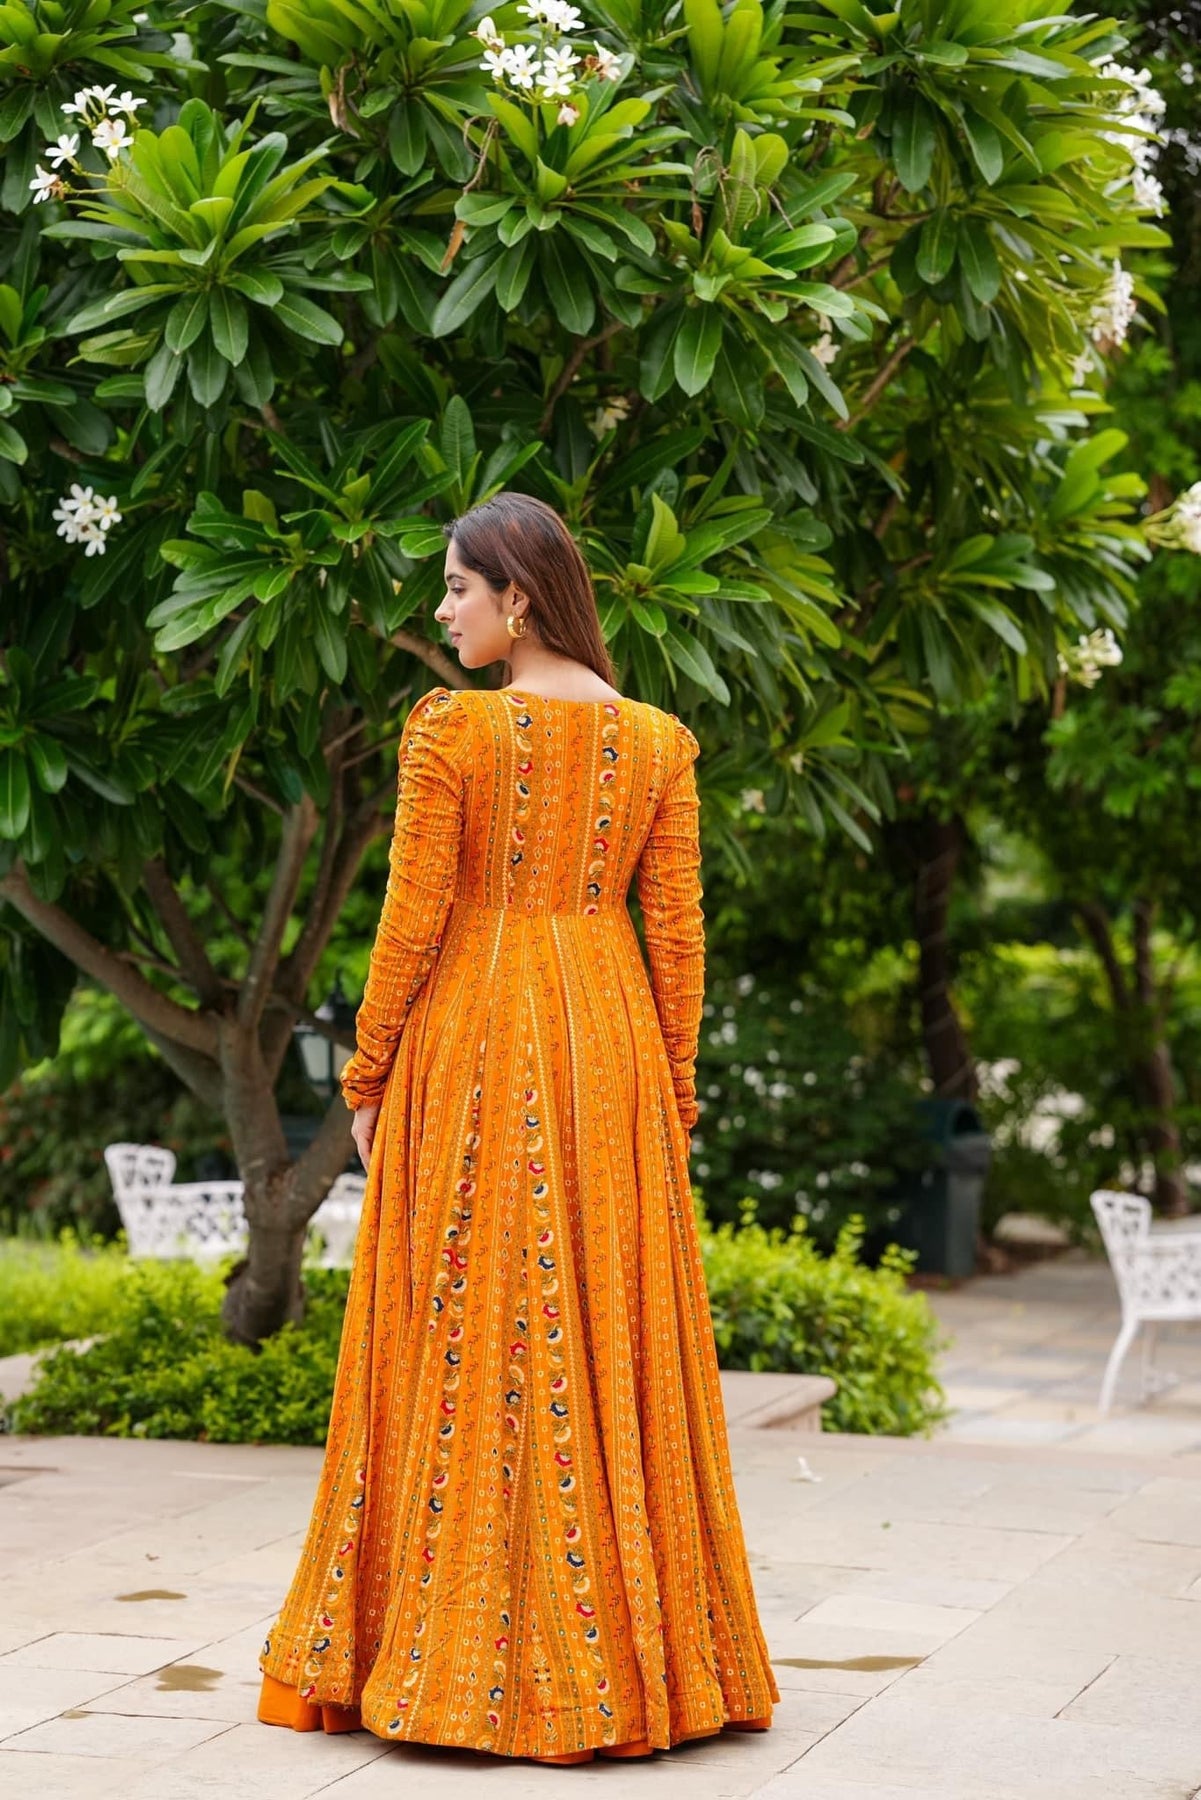 Beautiful Lehenga Suit Designs Online at Best Prices in India – Joshindia